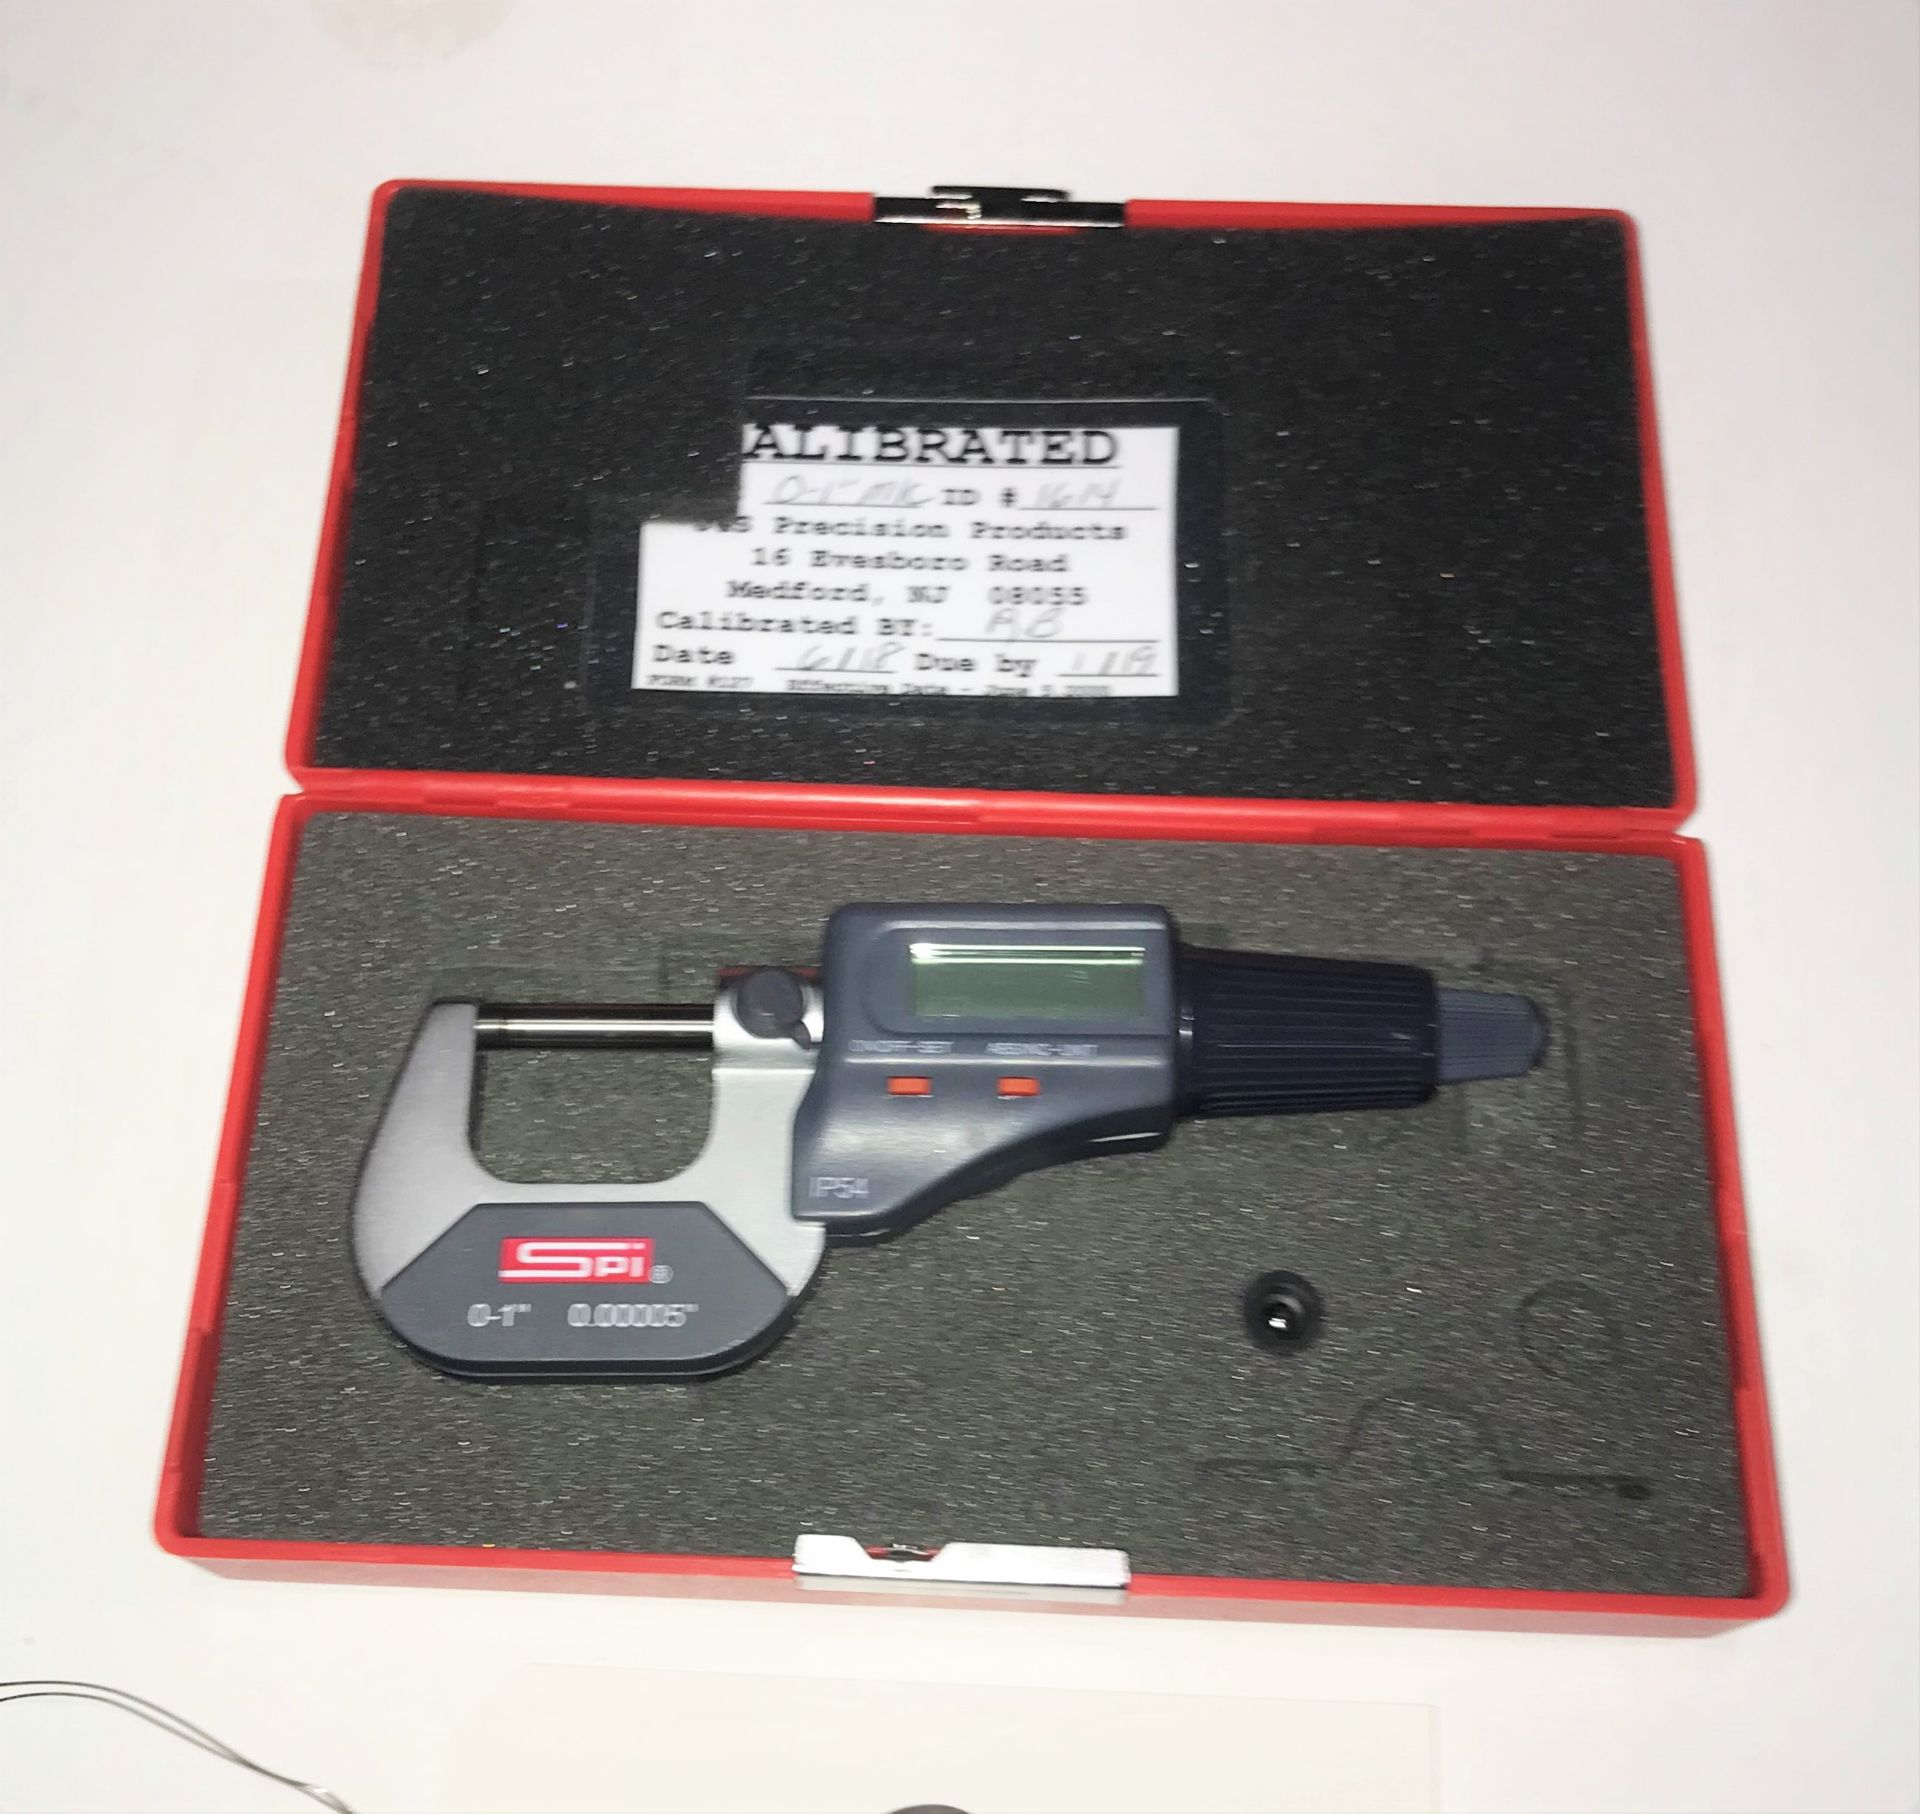 SPI 0 - 1" Digital Micrometer